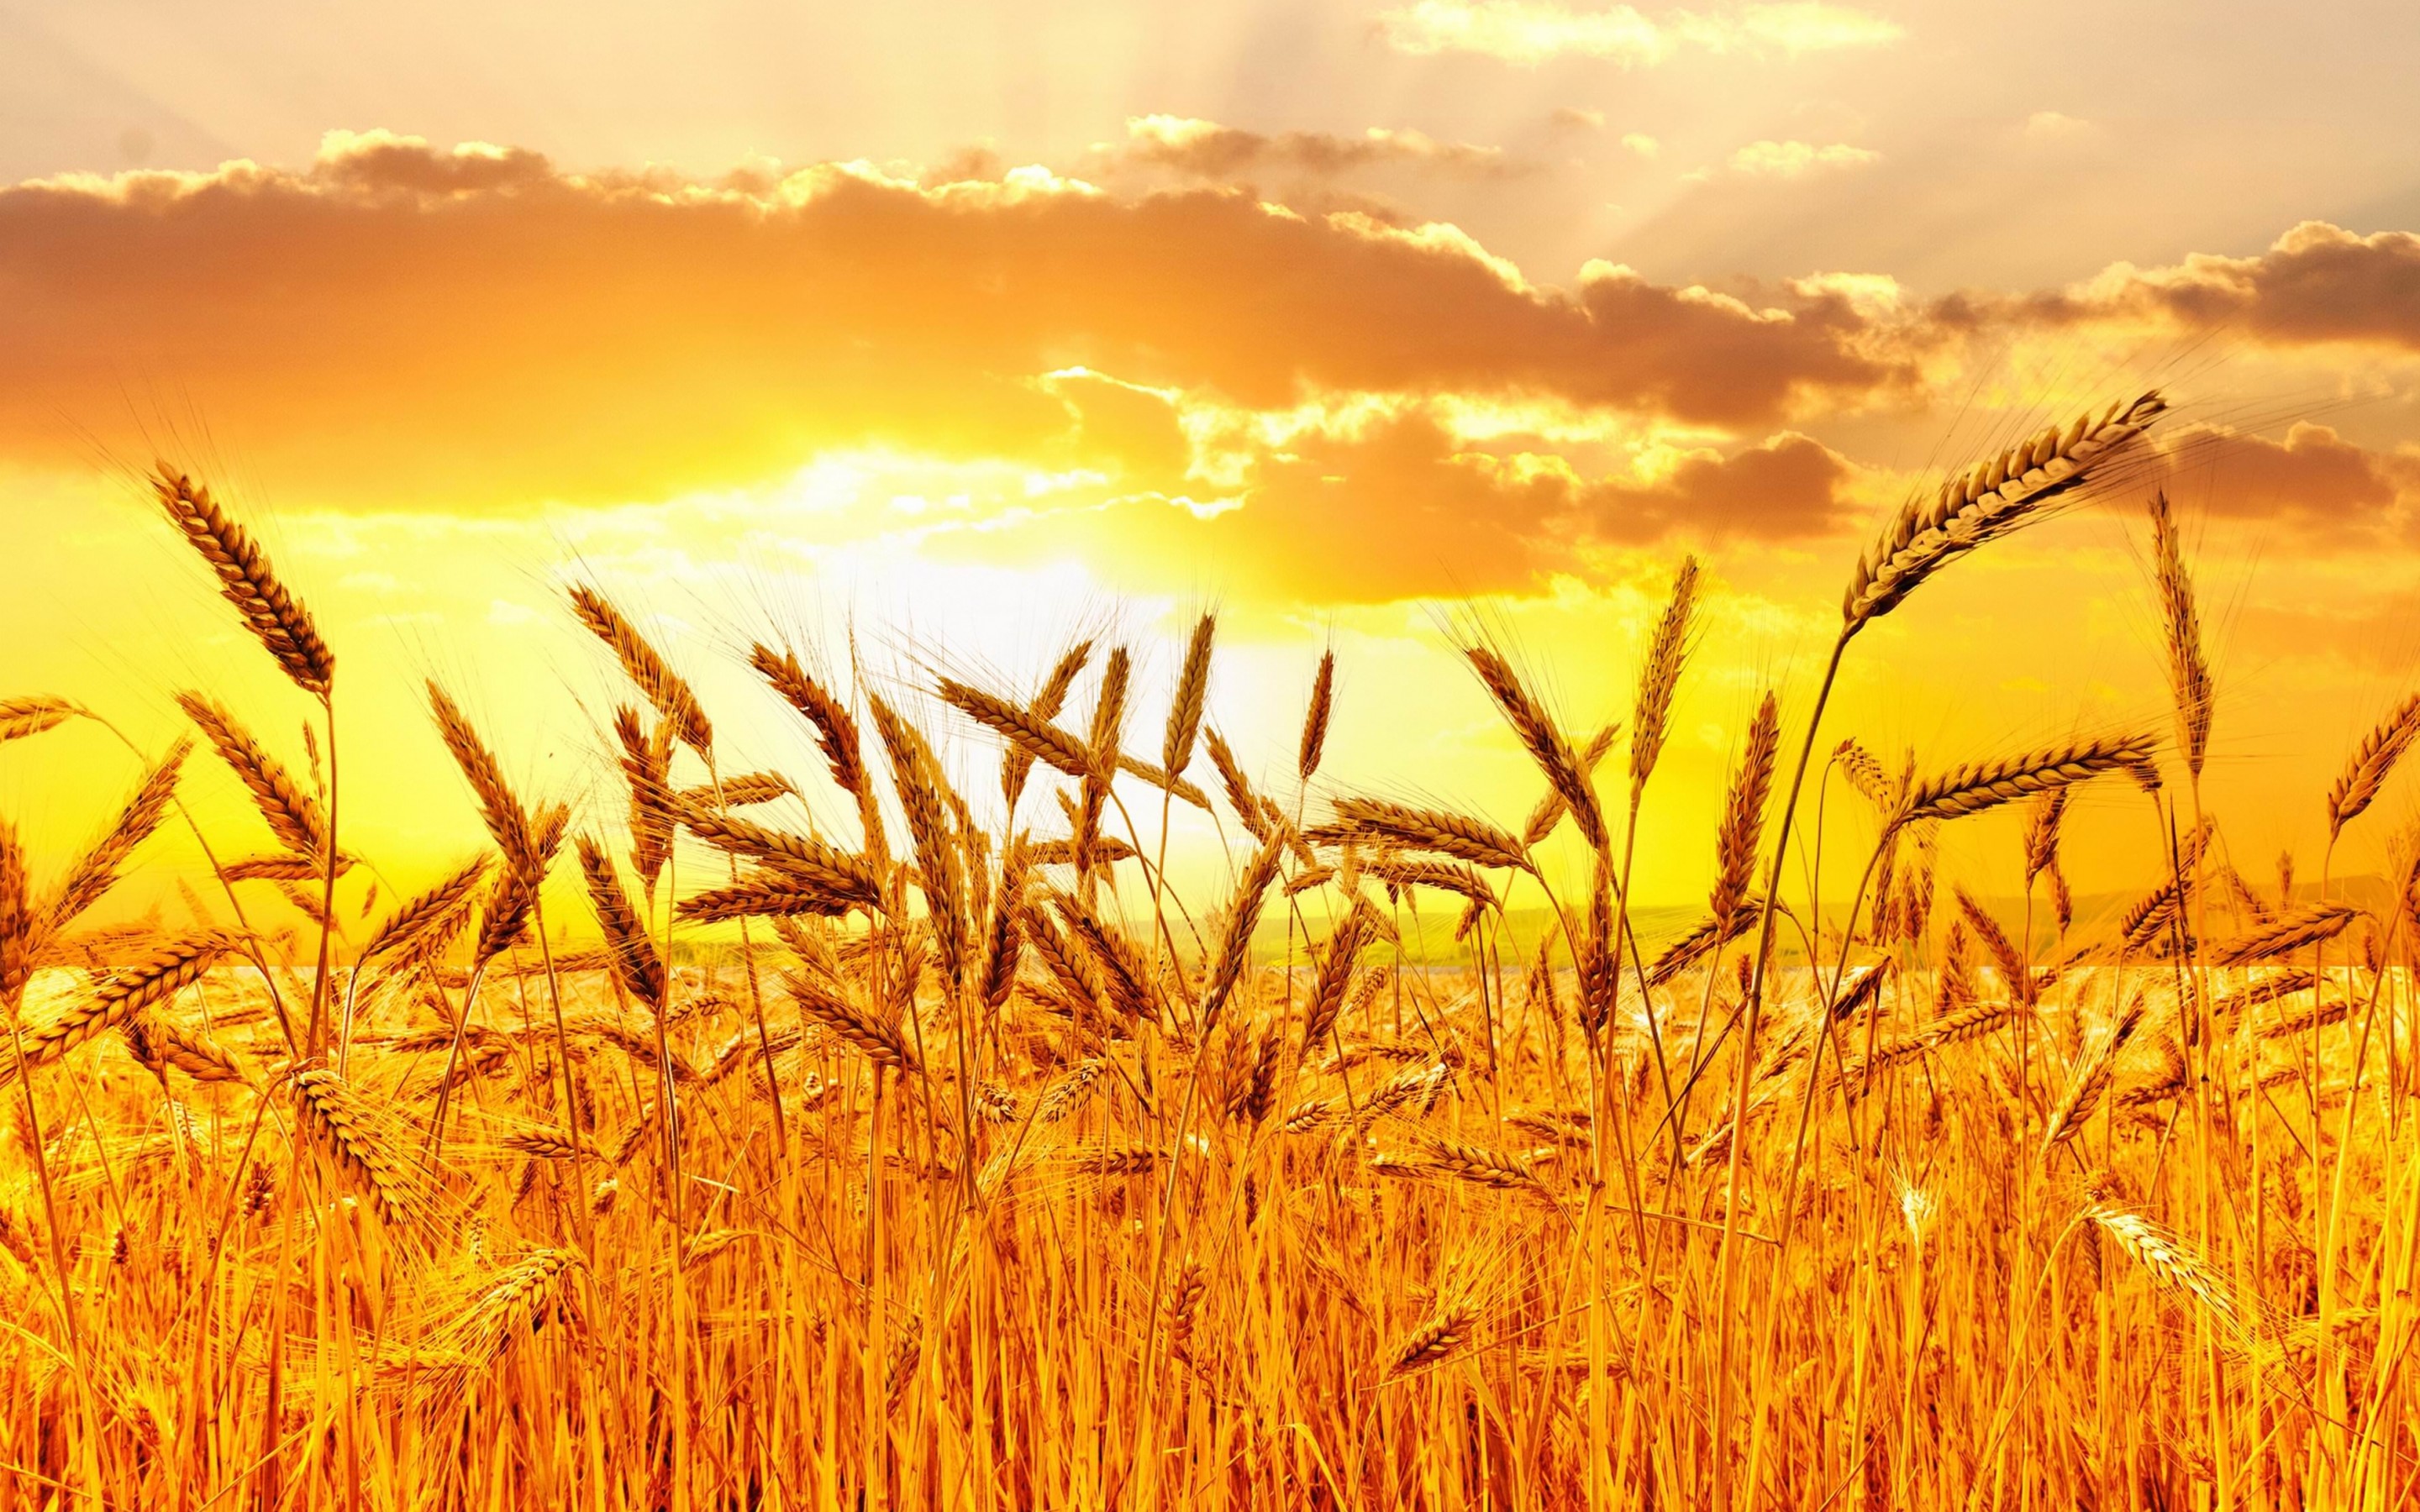 Golden Wheat Field At Sunset Wallpaper for Desktop 2880x1800